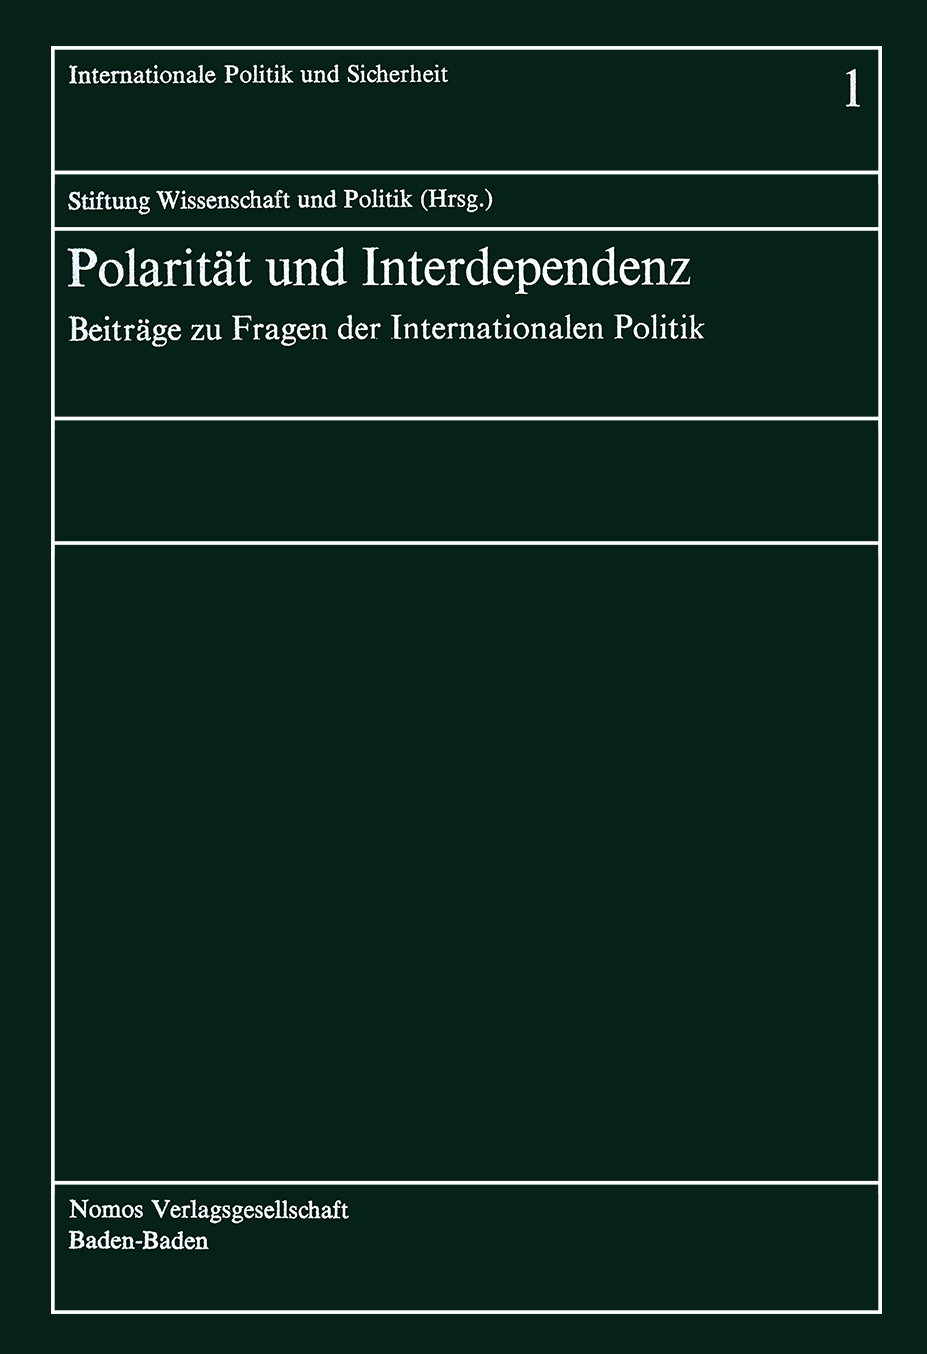 Polarität und Interdependenz, vol. 1, 1978, p. 411-431;